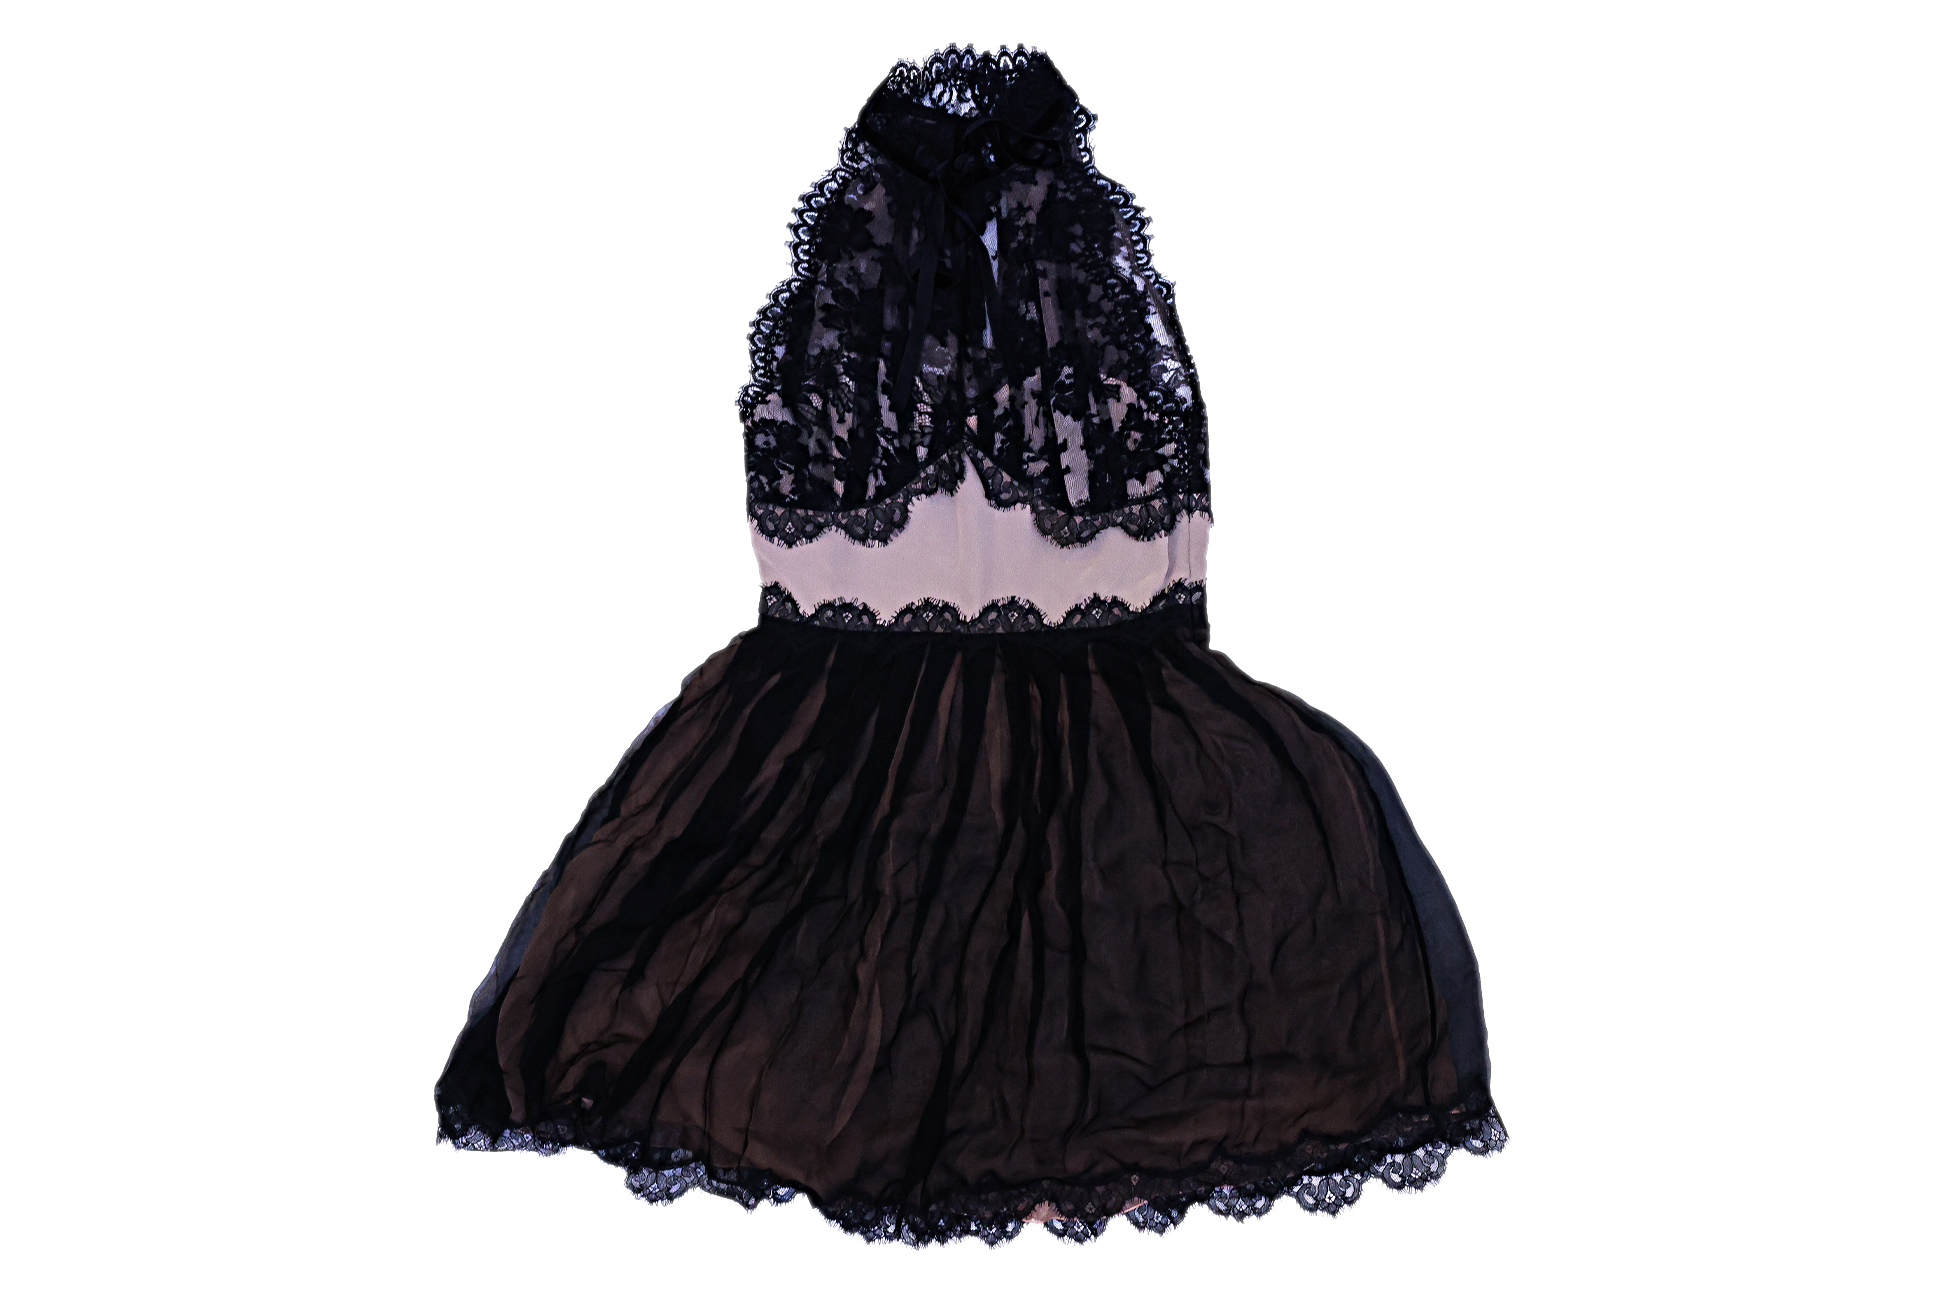 AN ALBERTA FERRETTI BLACK LACE COCKTAIL DRESS